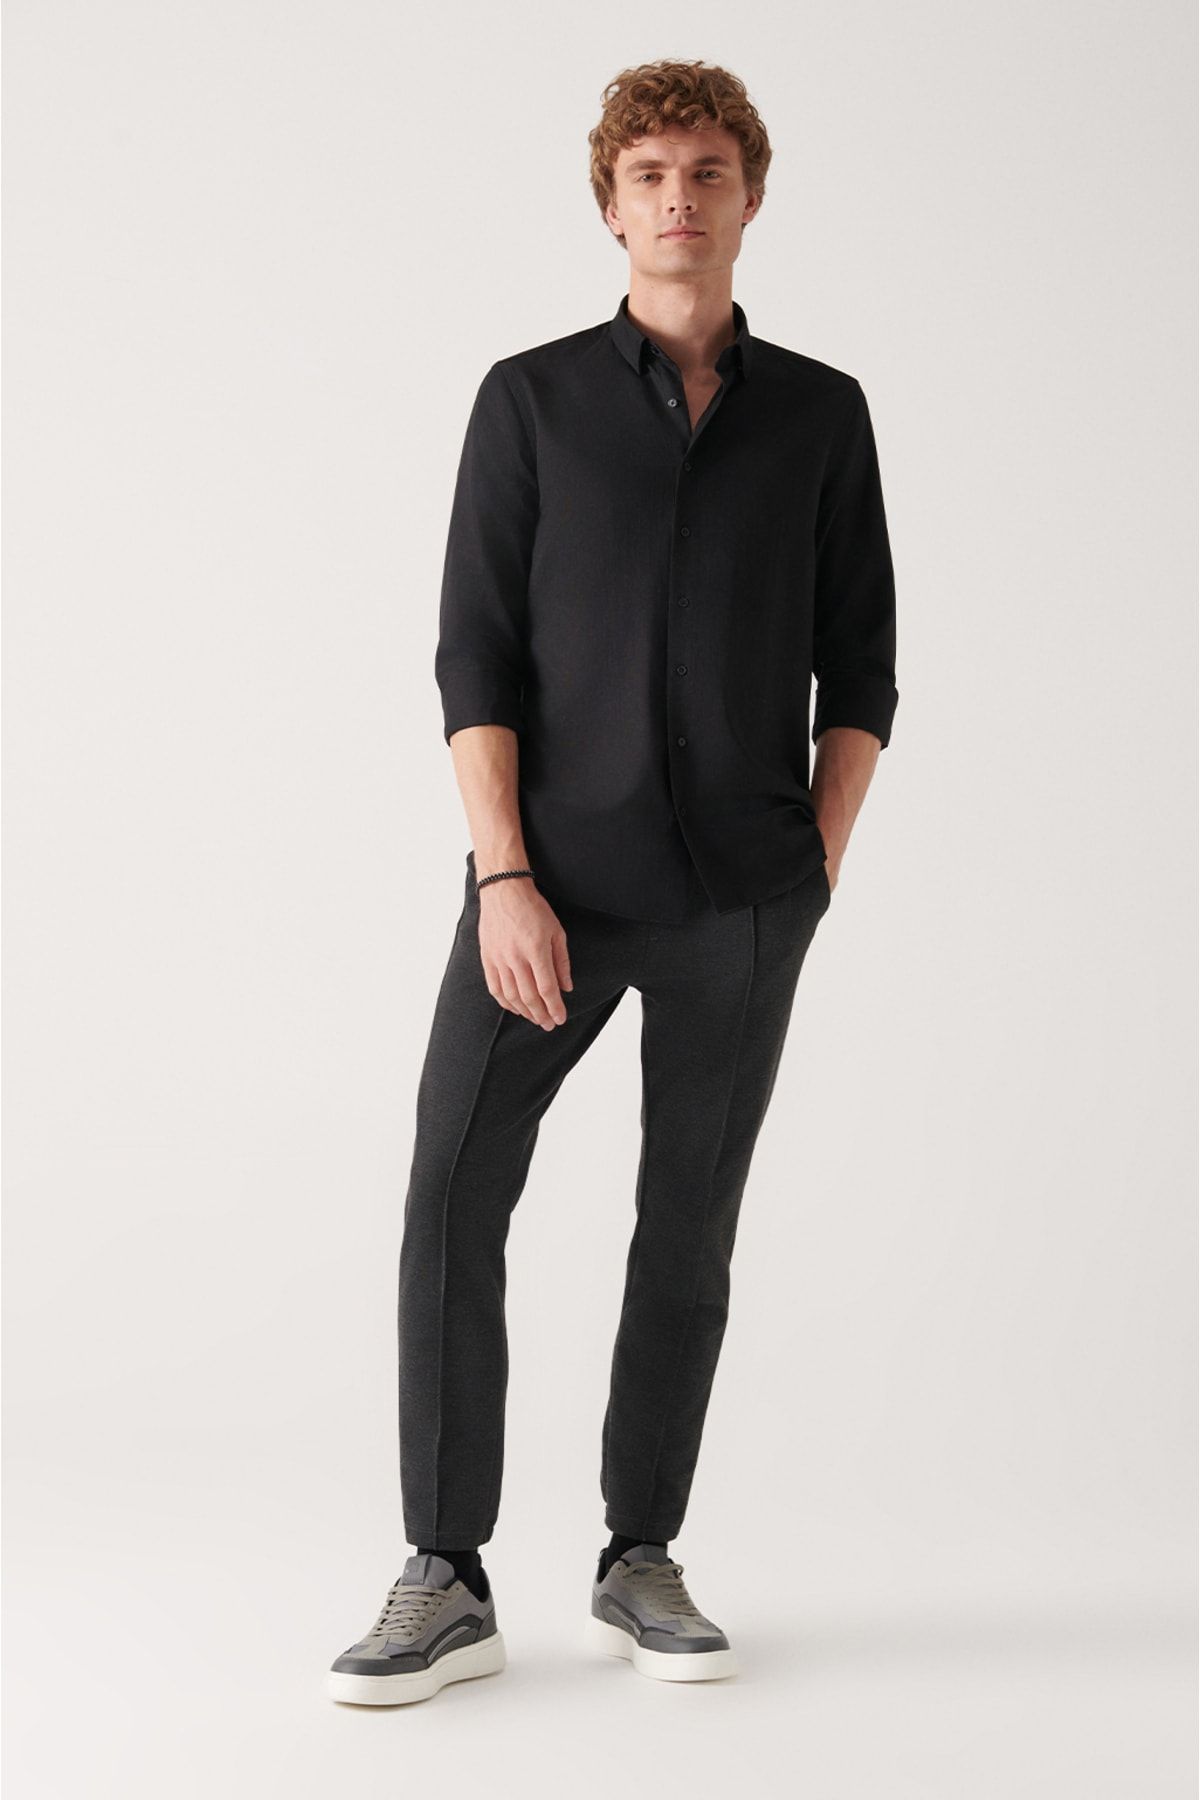 شلوار پارچه ای مشکی جیب دار کمرکش کاپوت دار مدل راسته مردانه آوا Avva (برند ترکیه)